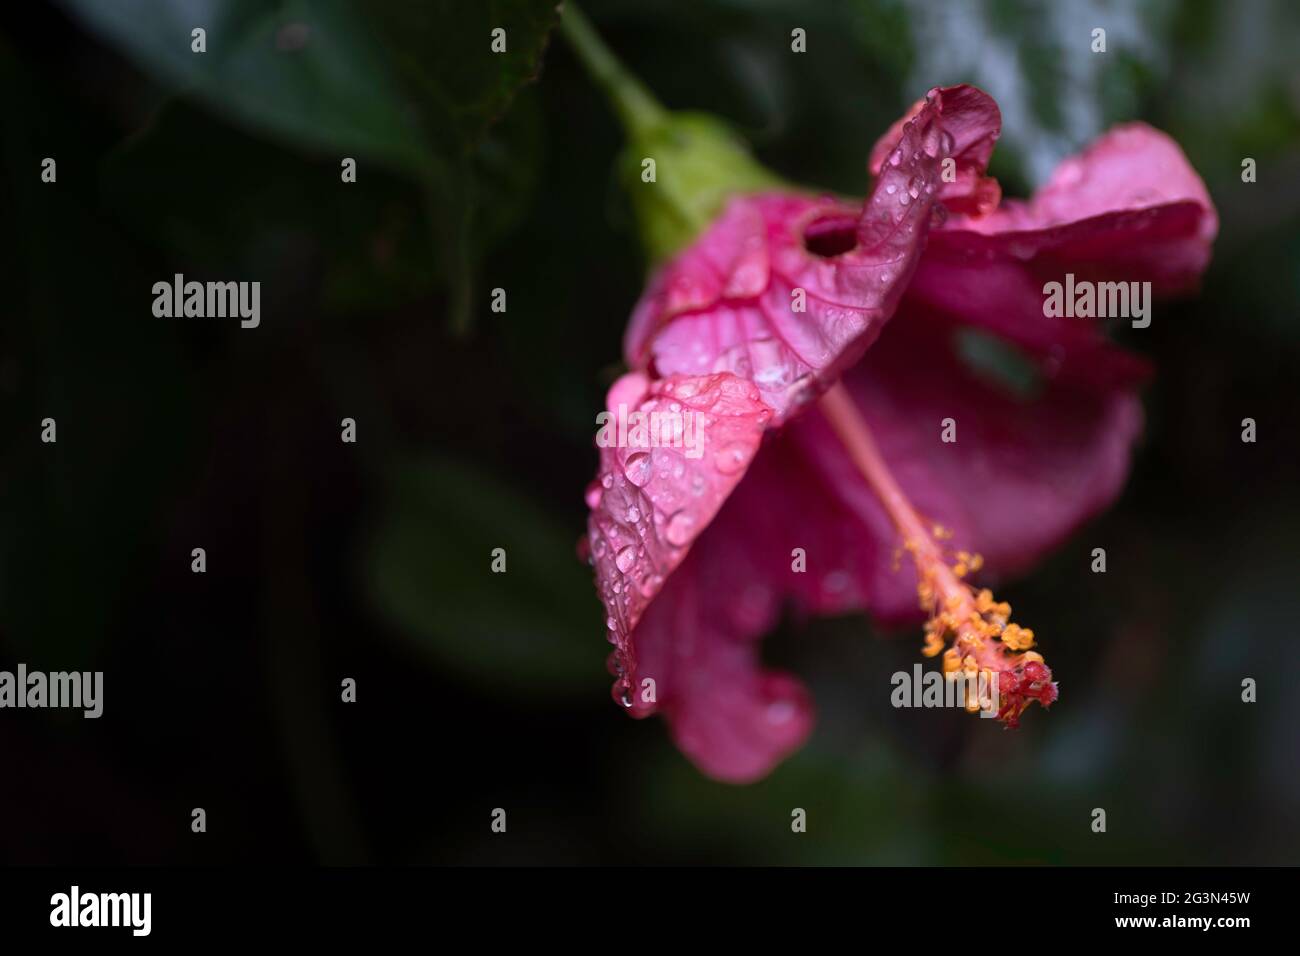 Grande fleur d'hibiscus pourpre conspicieuse et en forme de trompette sur fond sombre. Concentrez-vous sur les pétales aqueux, les pistils et les étamines. Copier l'espace Banque D'Images